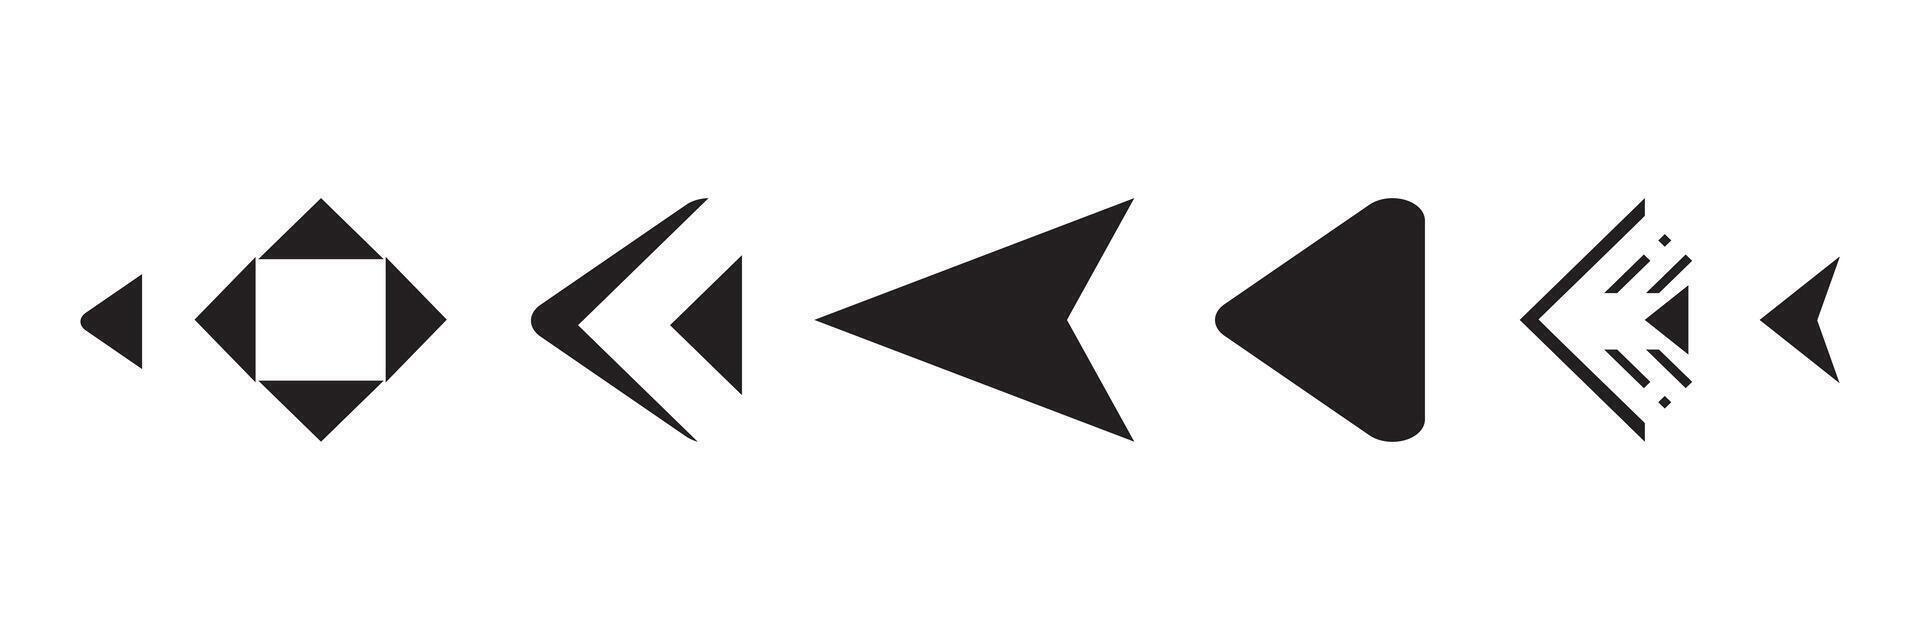 conjunto de negro vector flecha.flecha vector ilustración y colección.flechas vector icono.